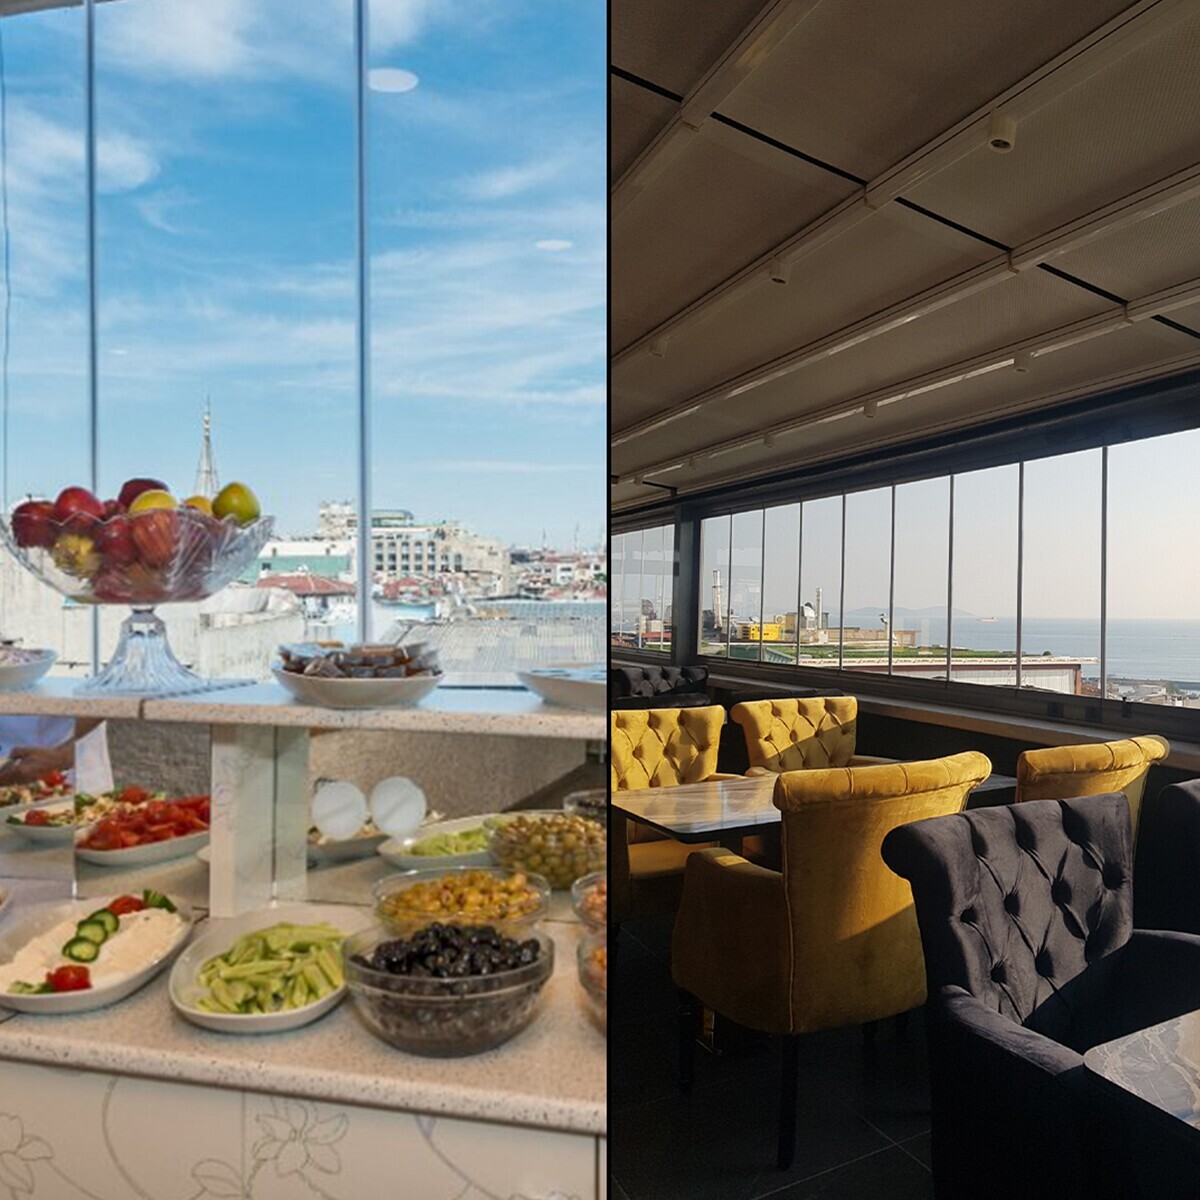 360 Derece Deniz ve İstanbul Manzarasına Sahip Fatih Selenay Hotel’de Açık Büfe ya da Serpme Kahvaltı